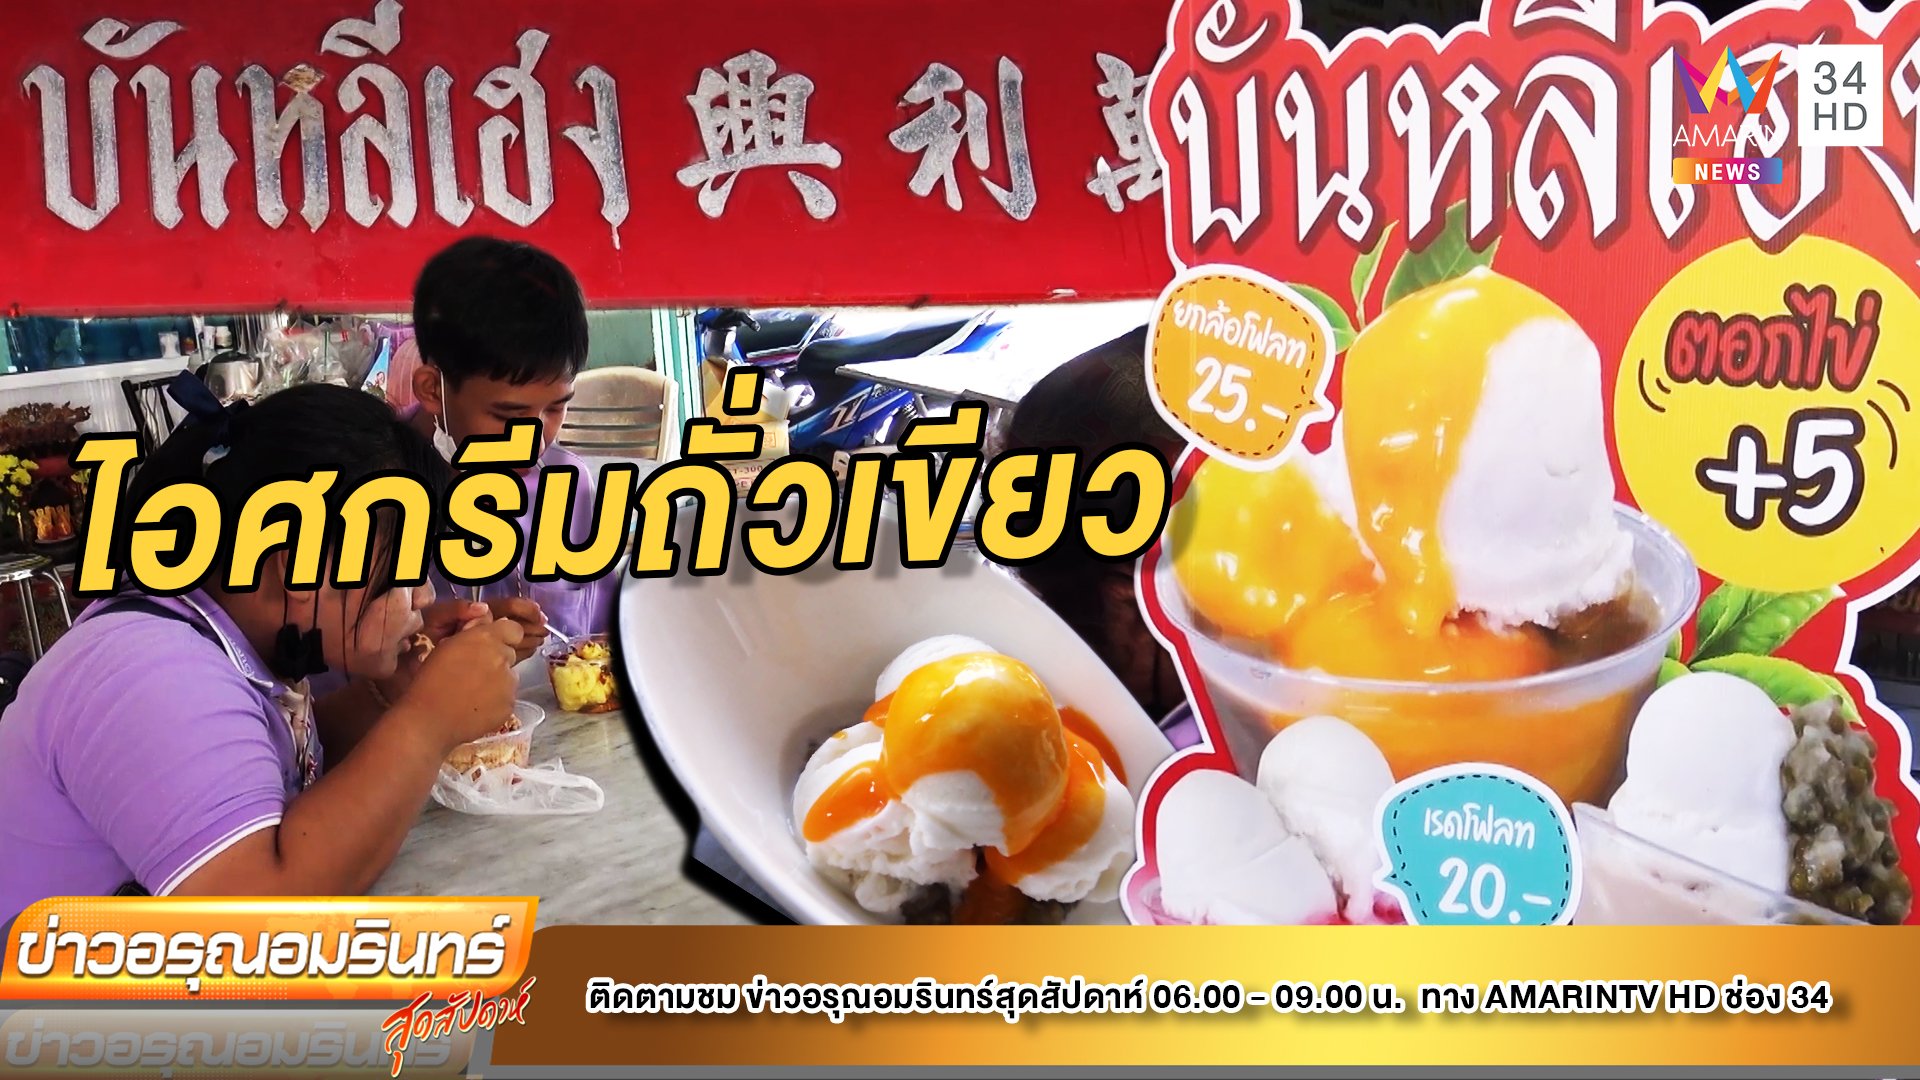 ชวนชิม! ไอศกรีมถั่วเขียวโบราณ ต้นตำรับเมืองสงขลา | ข่าวอรุณอมรินทร์ | 18 มิ.ย. 65 | AMARIN TVHD34